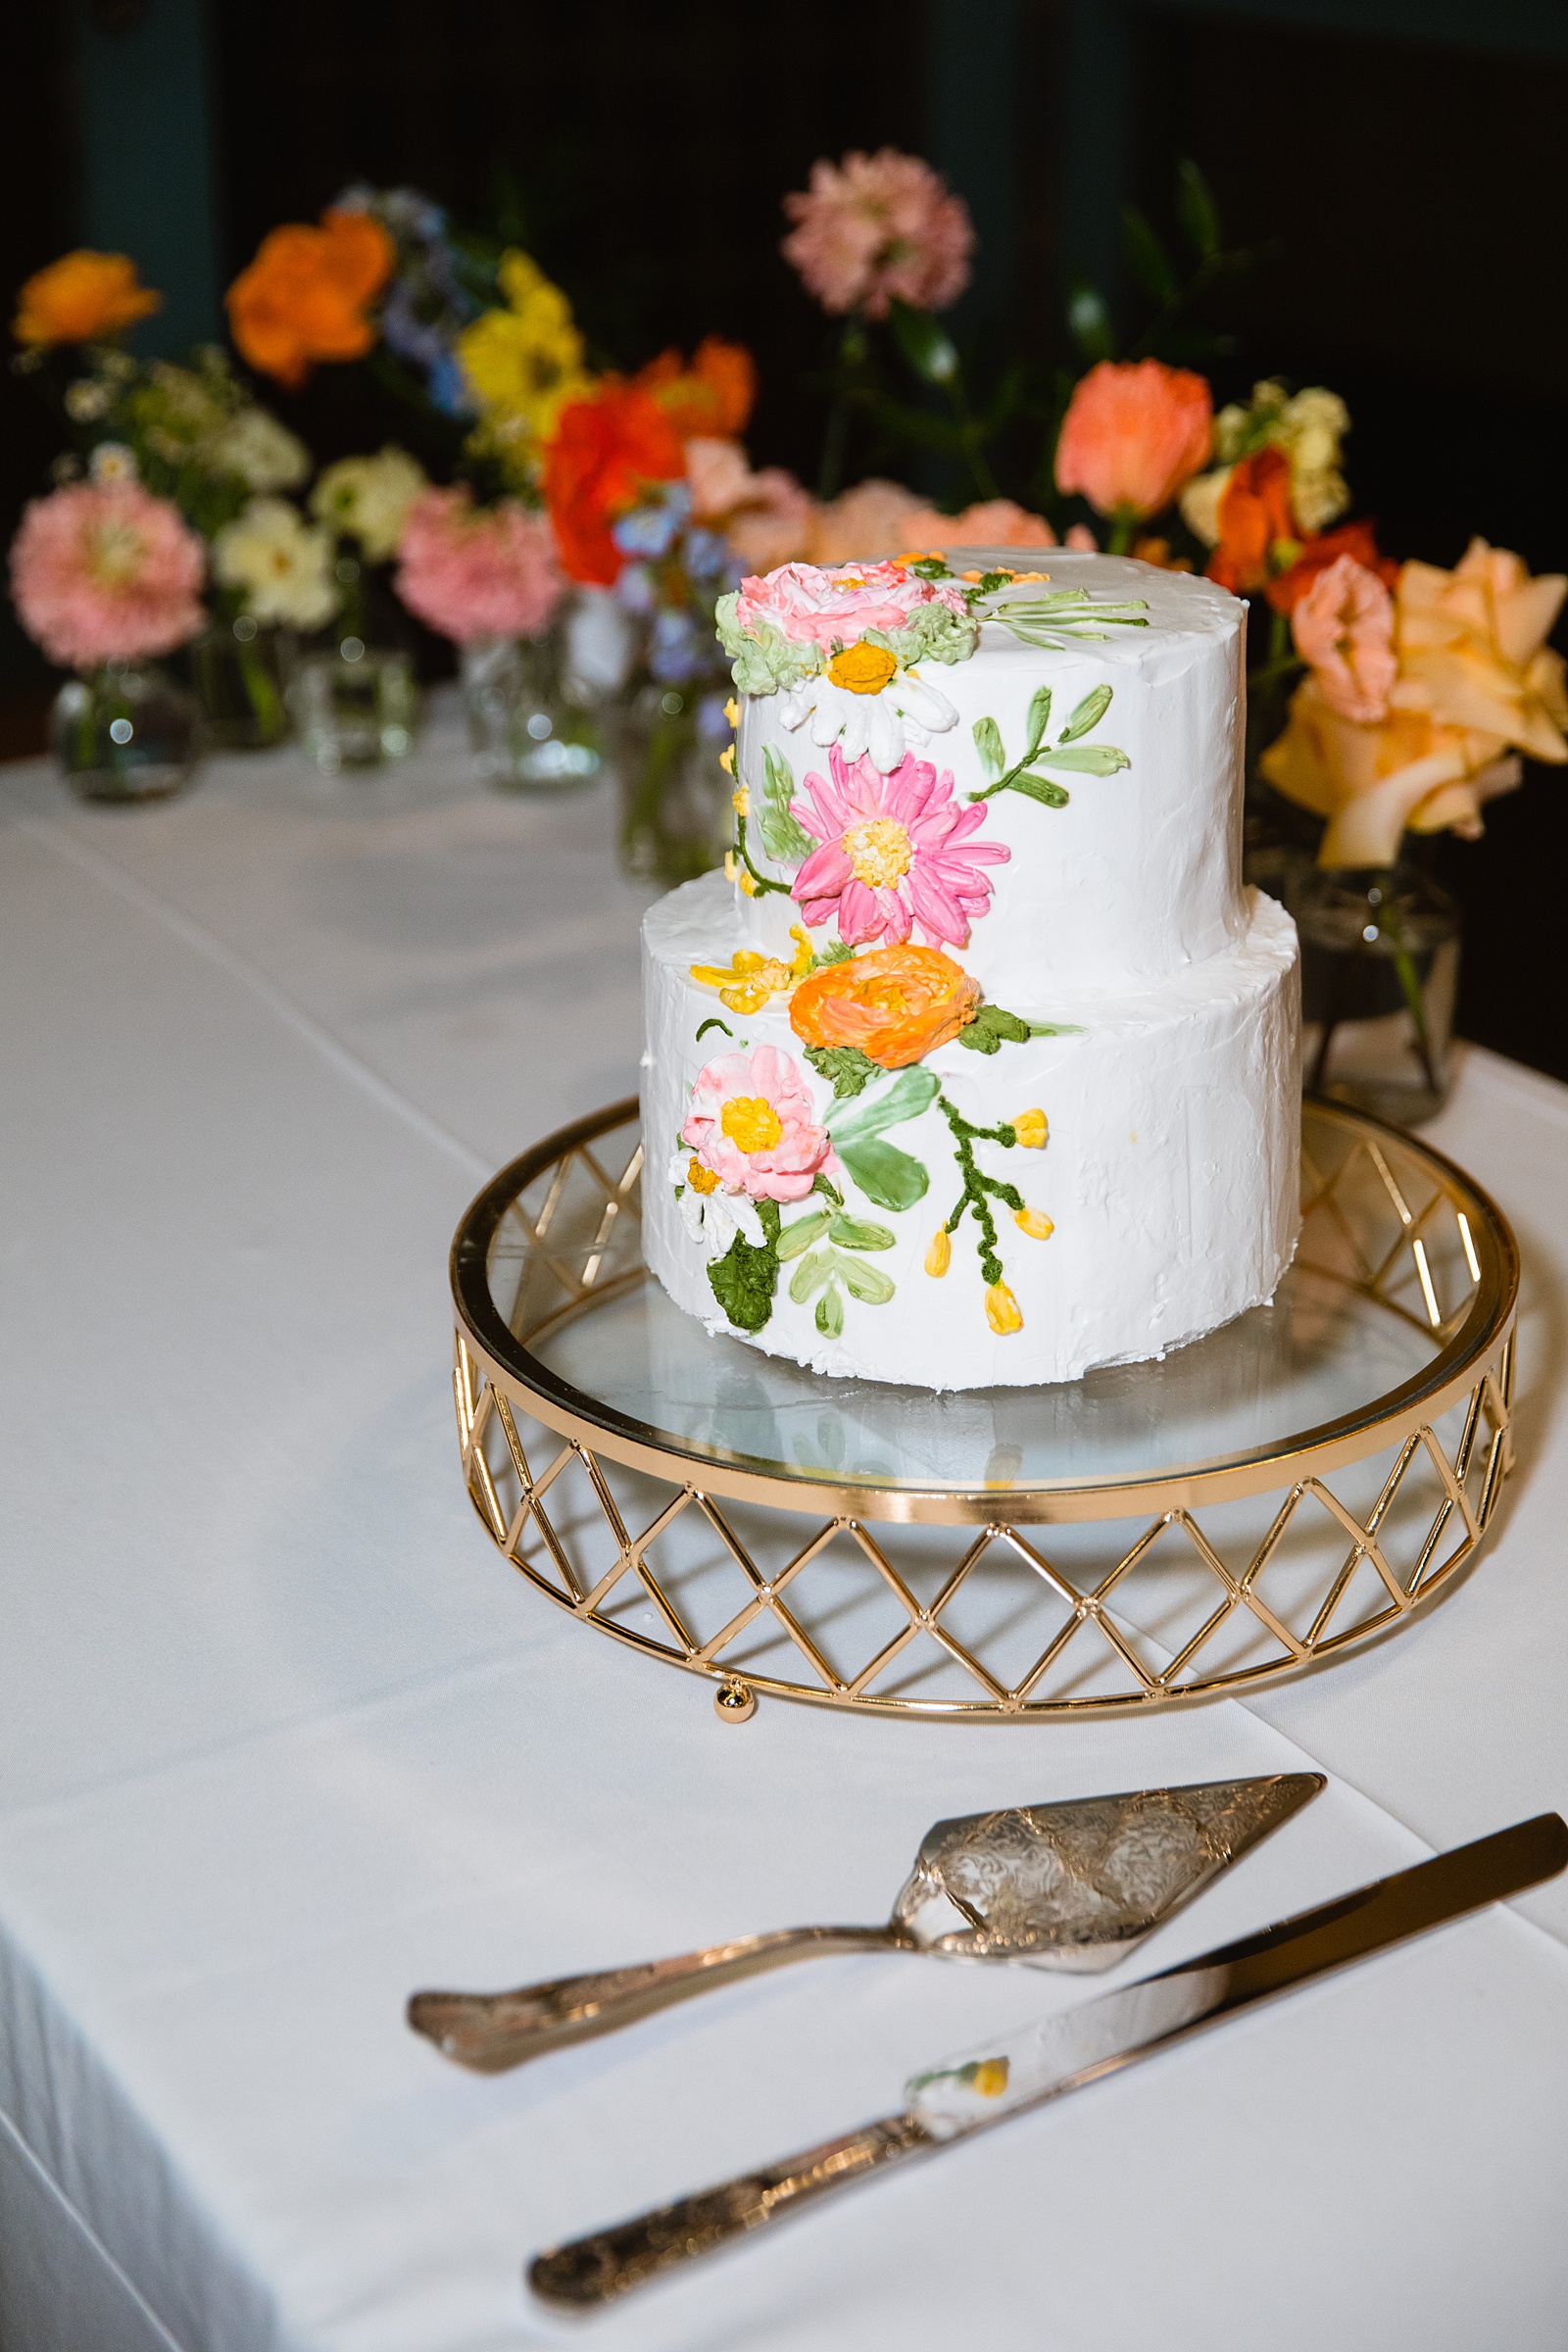 Home-made wedding cake by Arizona wedding photographer PMA Photography.